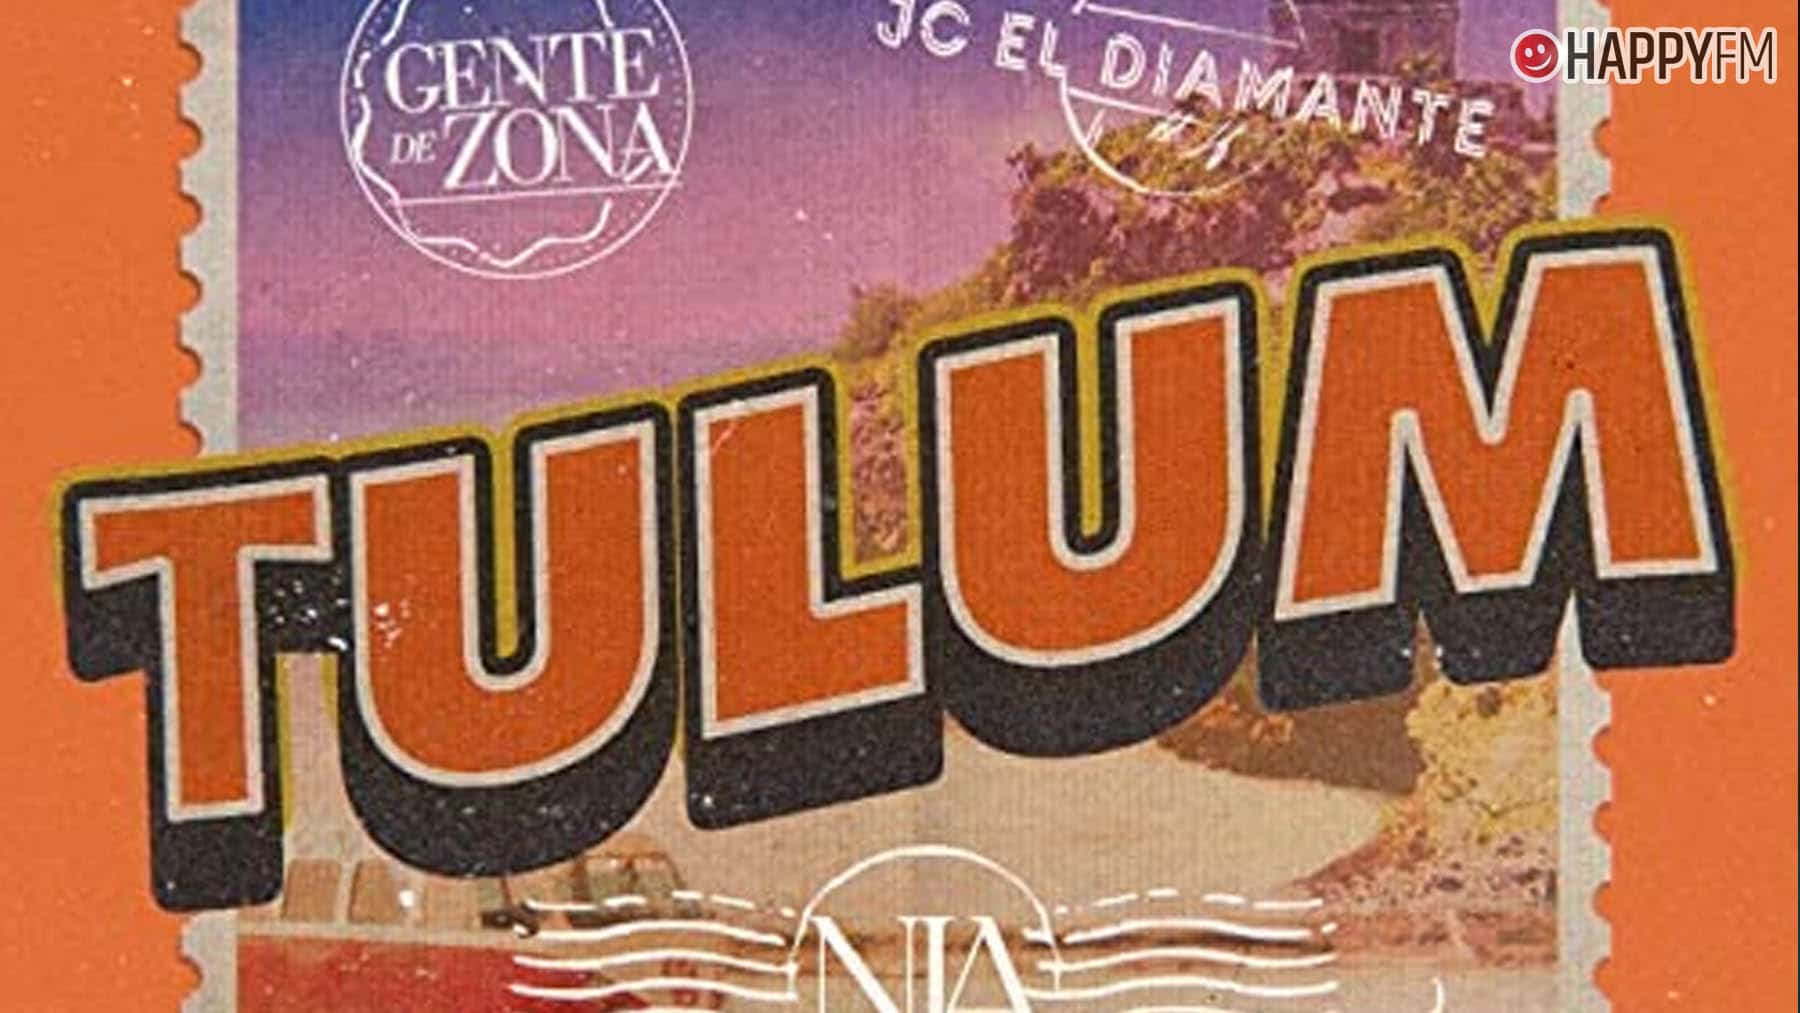 ‘Tulum’, de Nia, Gente de Zona y JC El Diamante: letra y vídeo